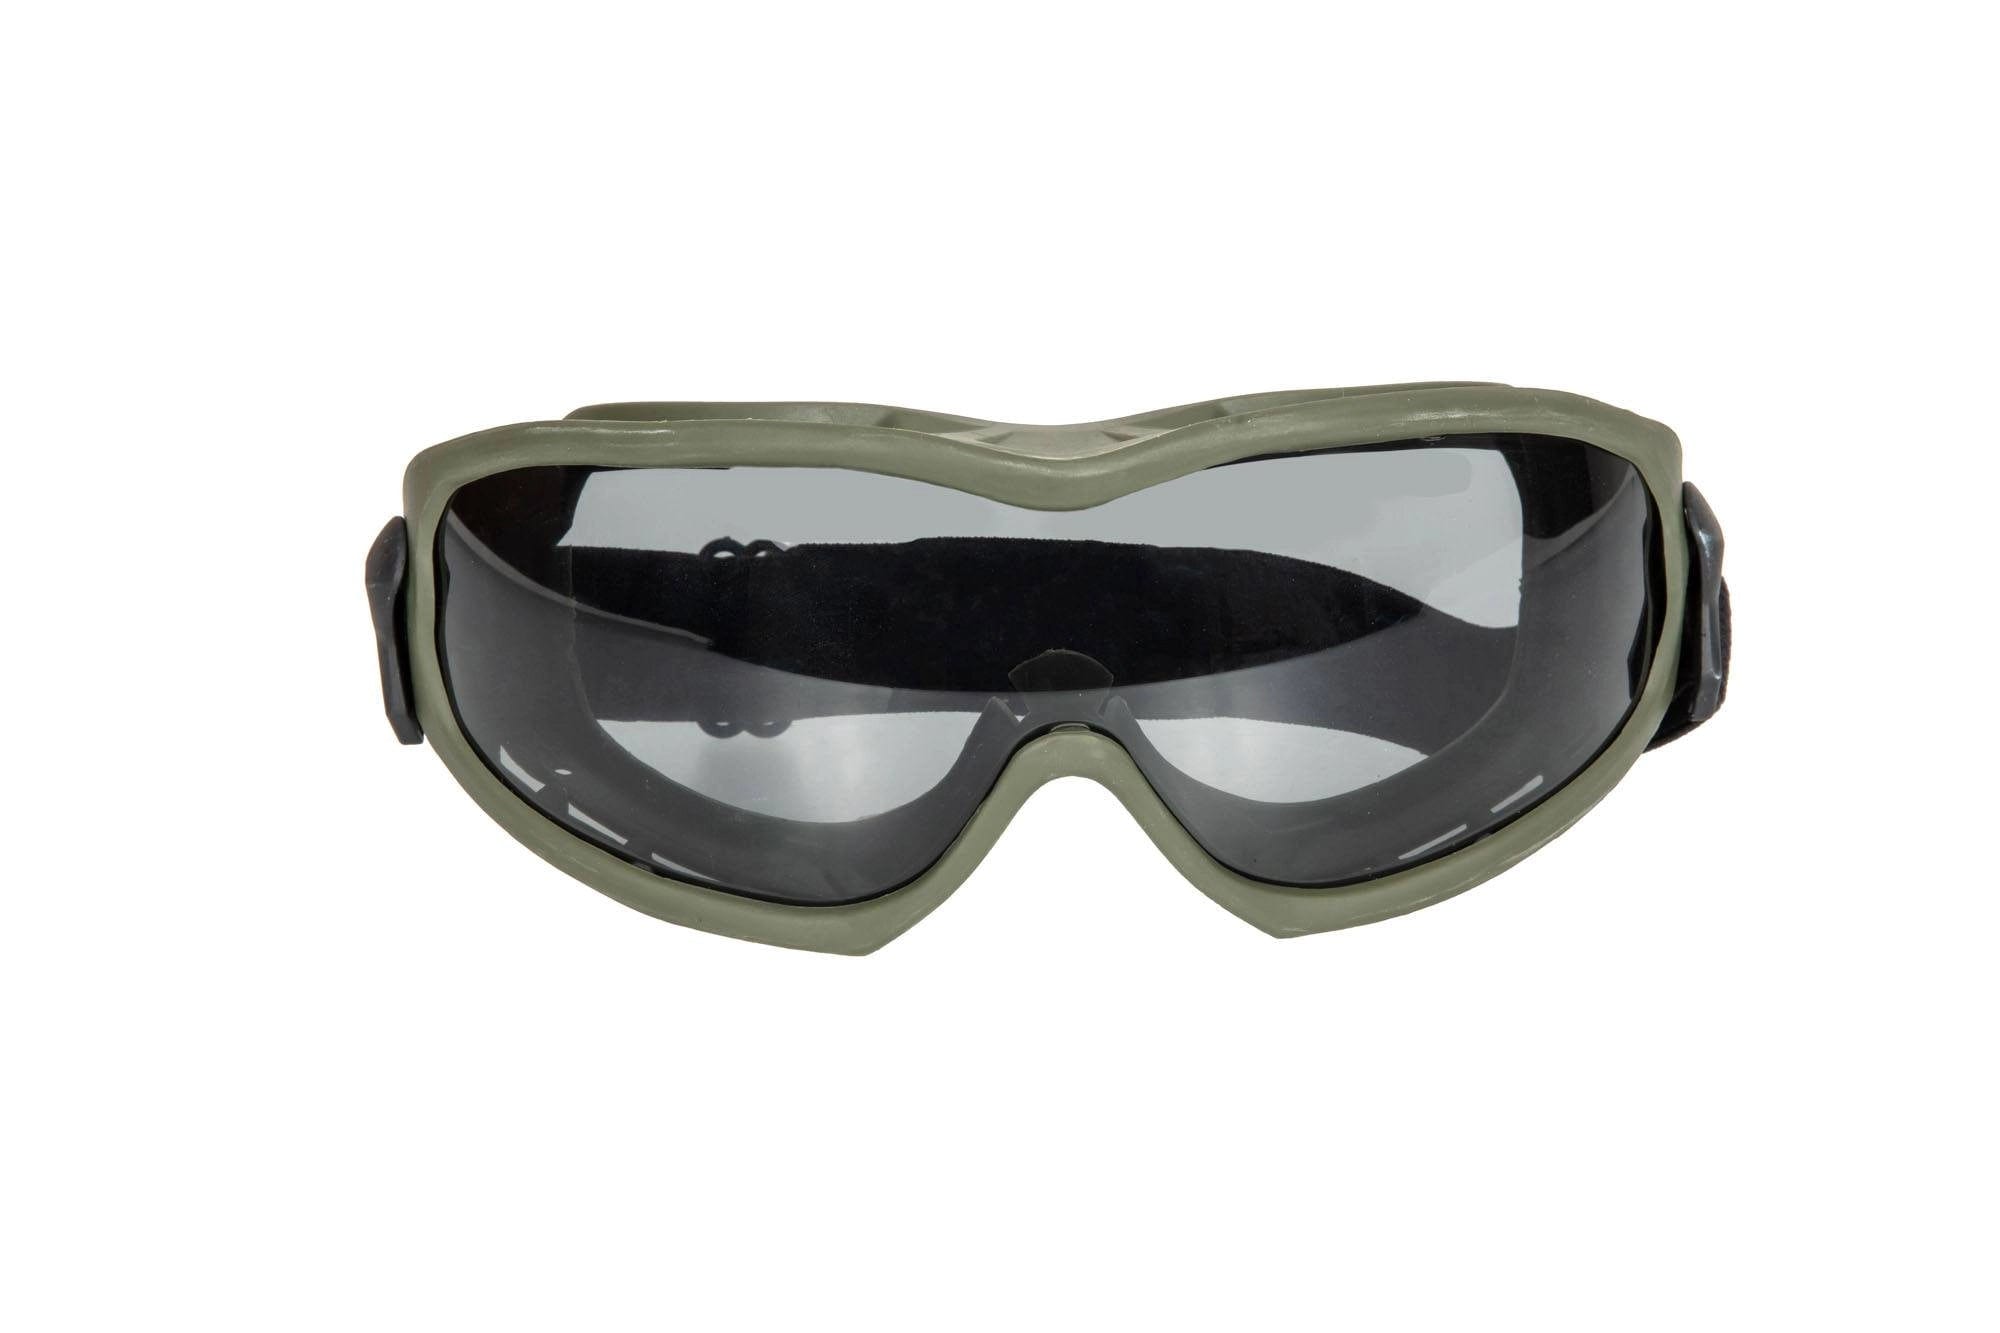 ANT Taktische Schutzbrille - Olive Drab